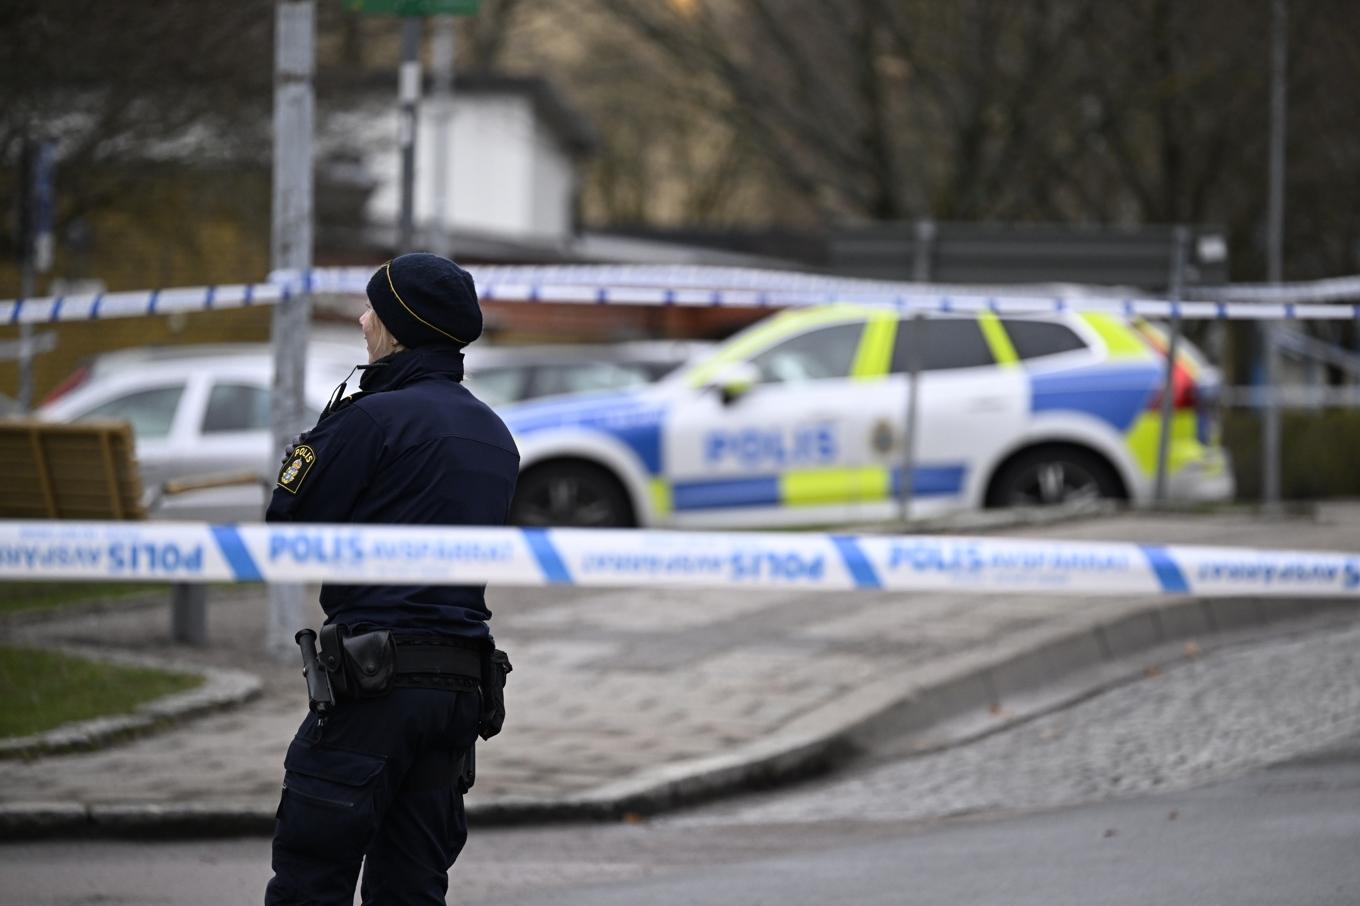 Polis och avspärrningar på Södra Hunnetorpsvägen i Helsingborg efter en skottlossning tidigt på fredagsmorgonen. Foto: Johan Nilsson/TT